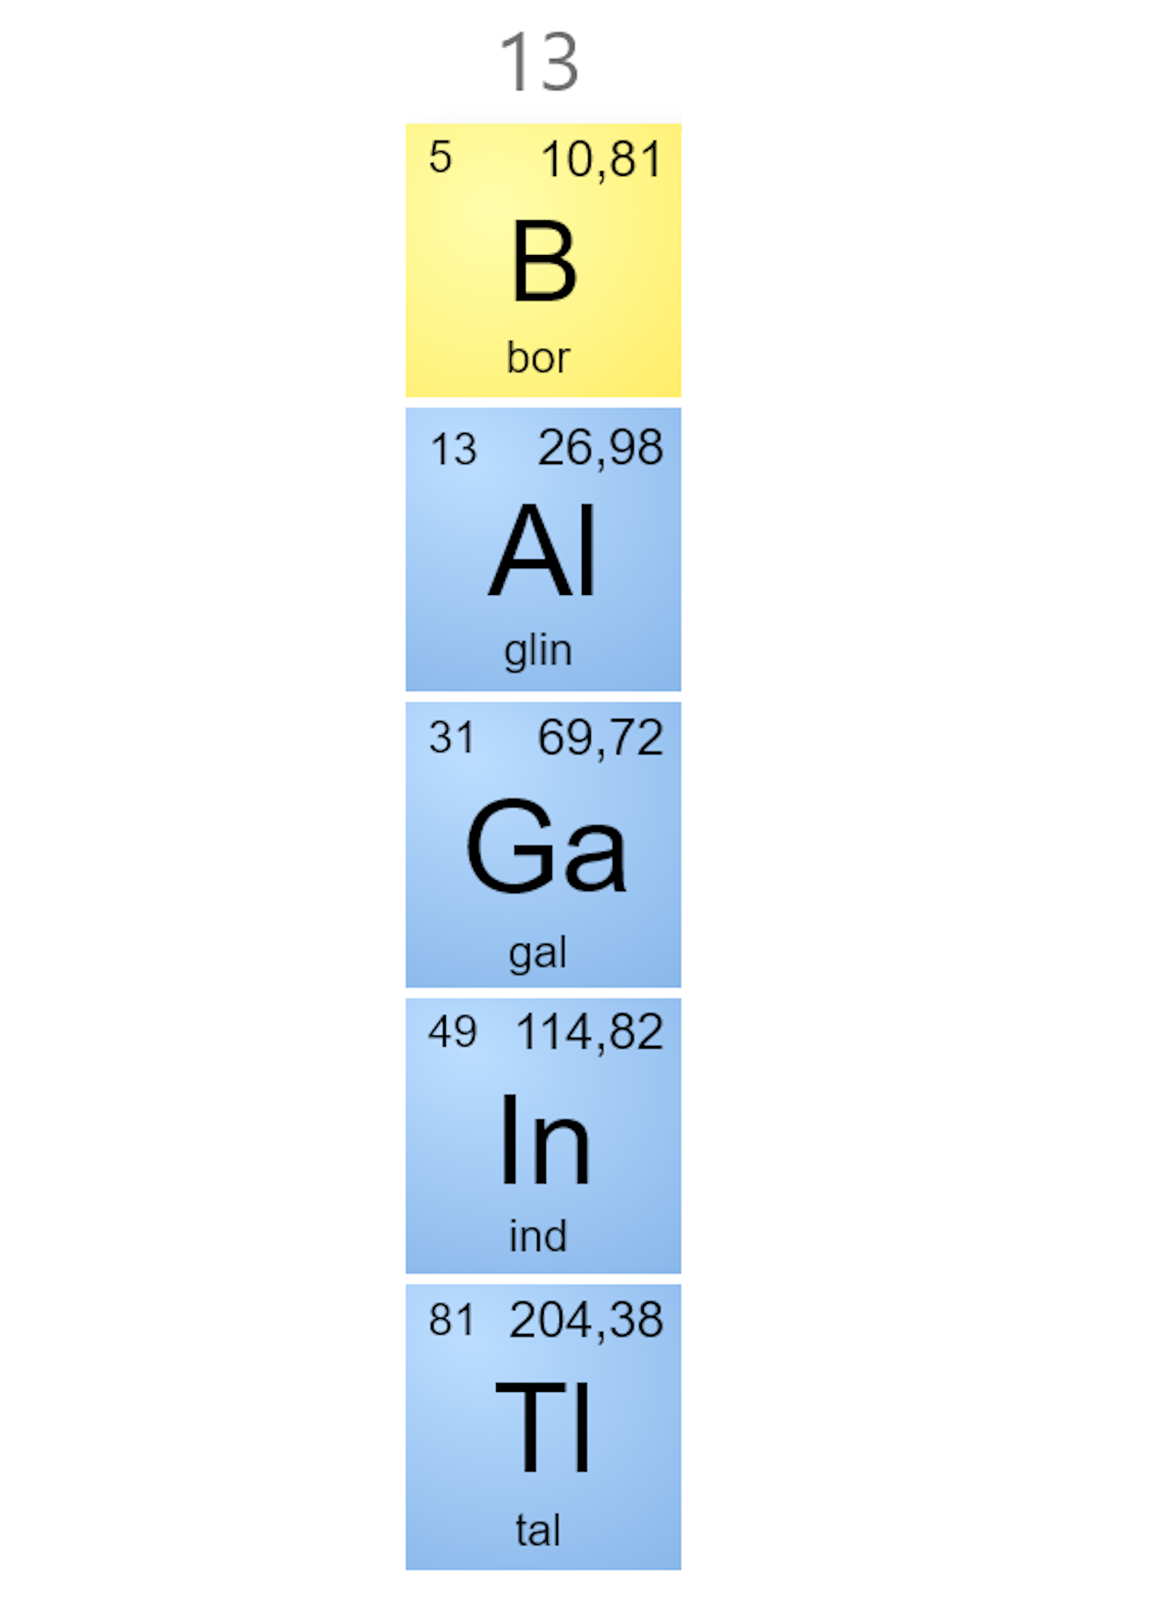 Ilustracja przedstawiająca grupę trzynastą układu okresowego pierwiastków. Podano liczby atomowe odpowiednich pierwiastków oraz ich masy atomowe. Od góry kolejno bor B5 z masą atomową 10,81; glin Al13 z masą atomową 26,98; gal Ga31 z masą atomową 69,72; ind In49 z masą atomową 114,82 oraz tal Tl81 z masą atomową 204,38. 